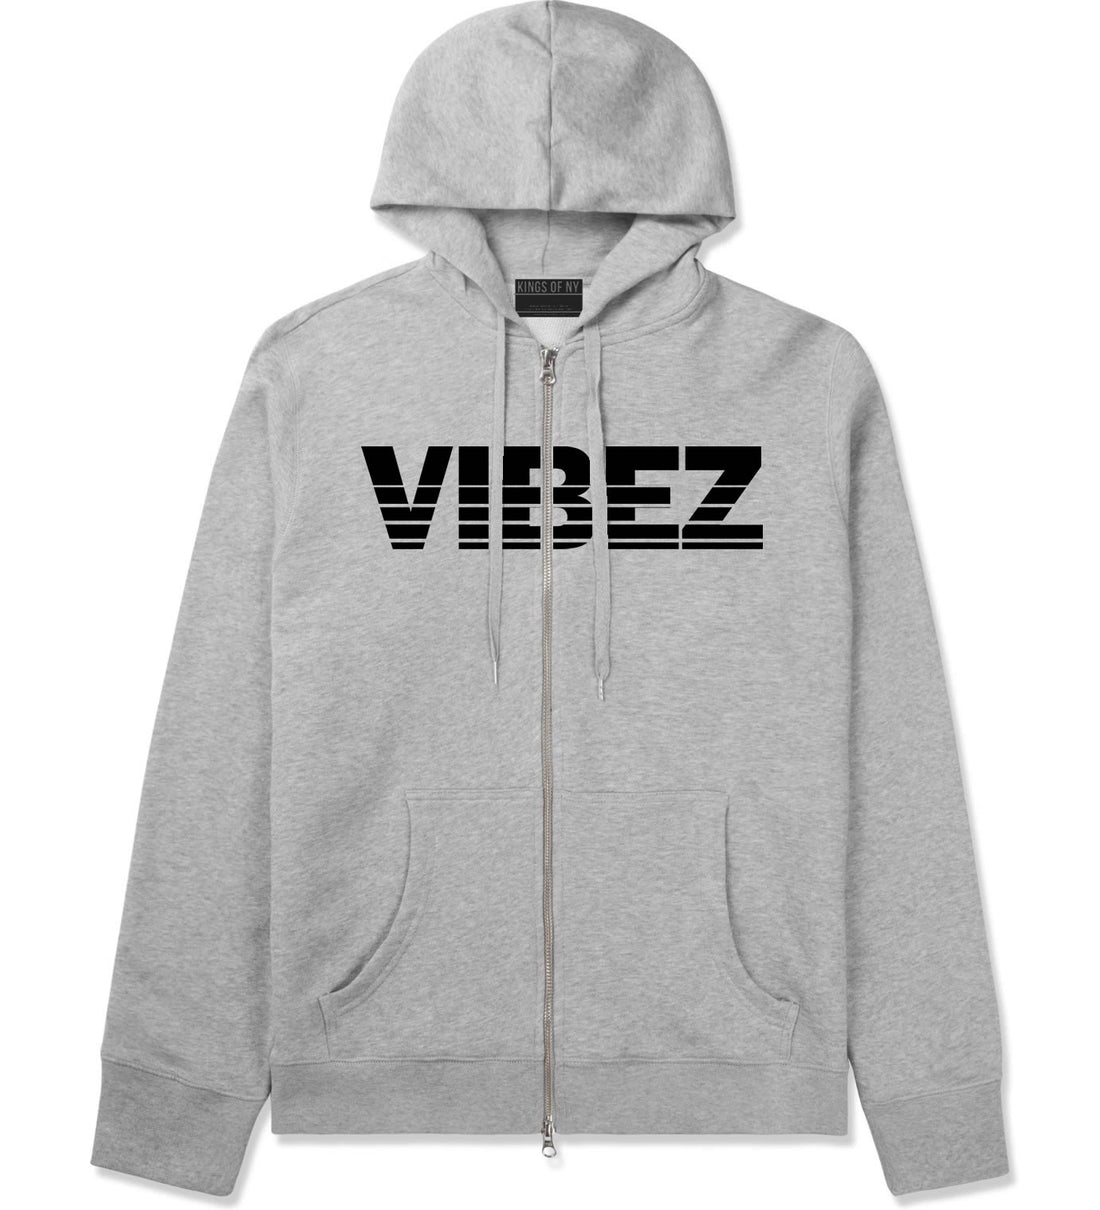 VIBEZ Racing Style Zip Up Hoodie Hoody in Grey by Kings Of NY